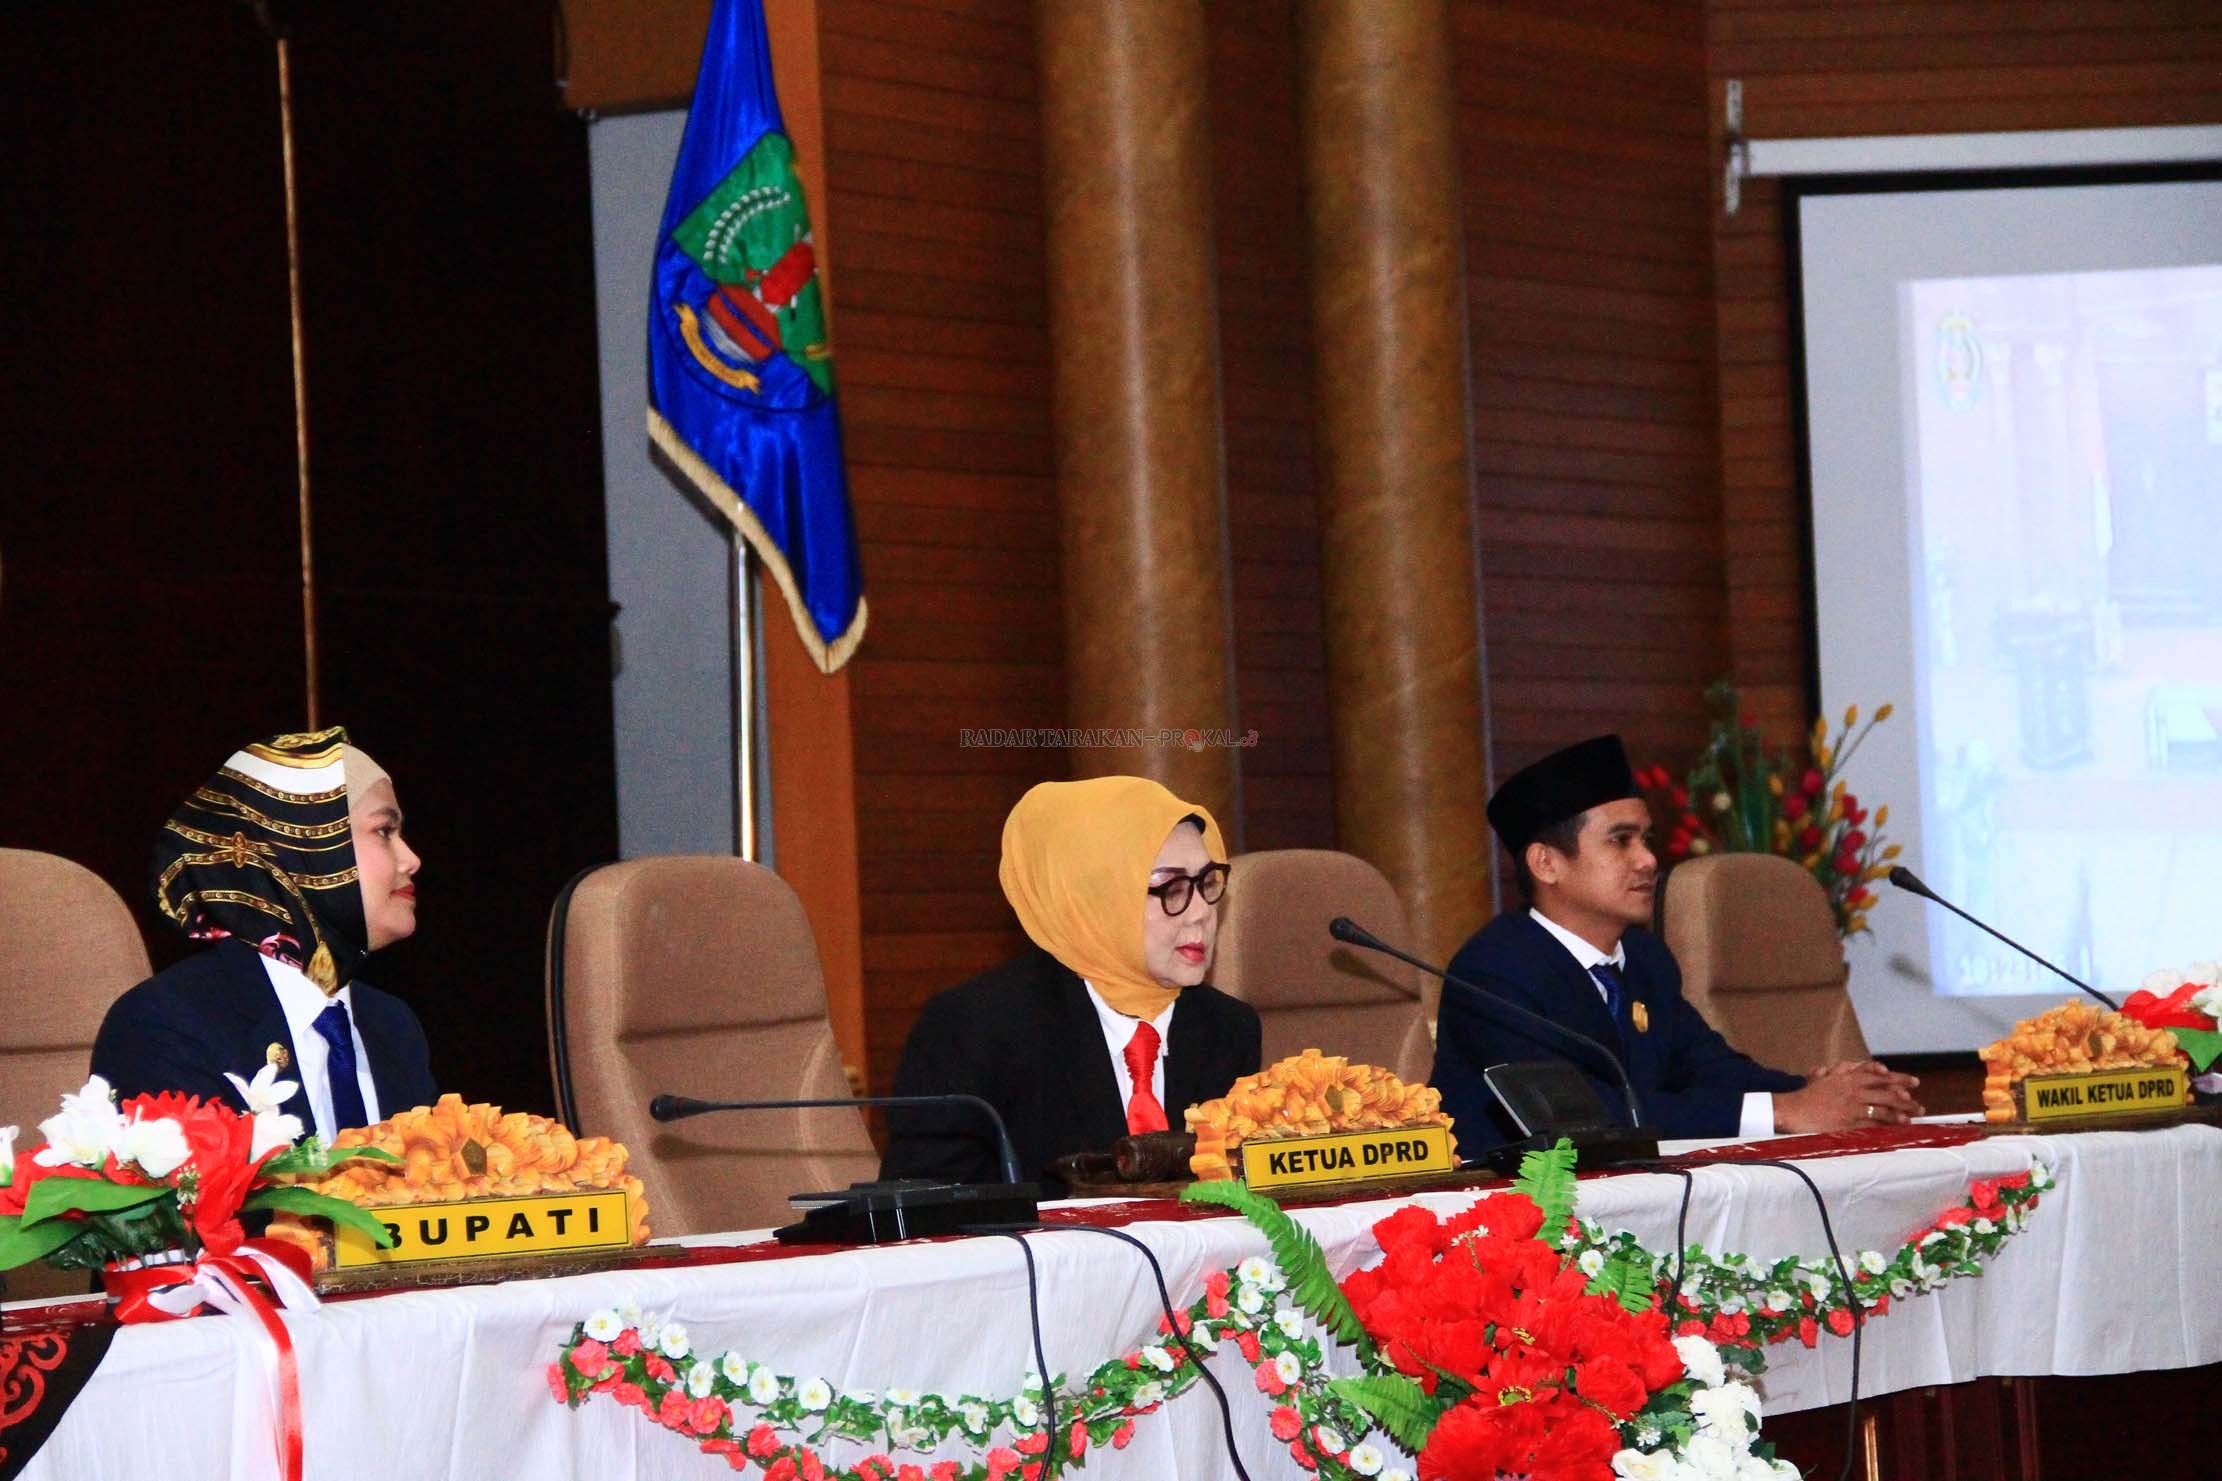 Bupati Nunukan, Kalimantan Utara, Asmi Laura Hafid, menghadiri pelantikan ibunya, Rahma Leppa sebagai Ketua DPRD Nunukan periode 2019-2024.